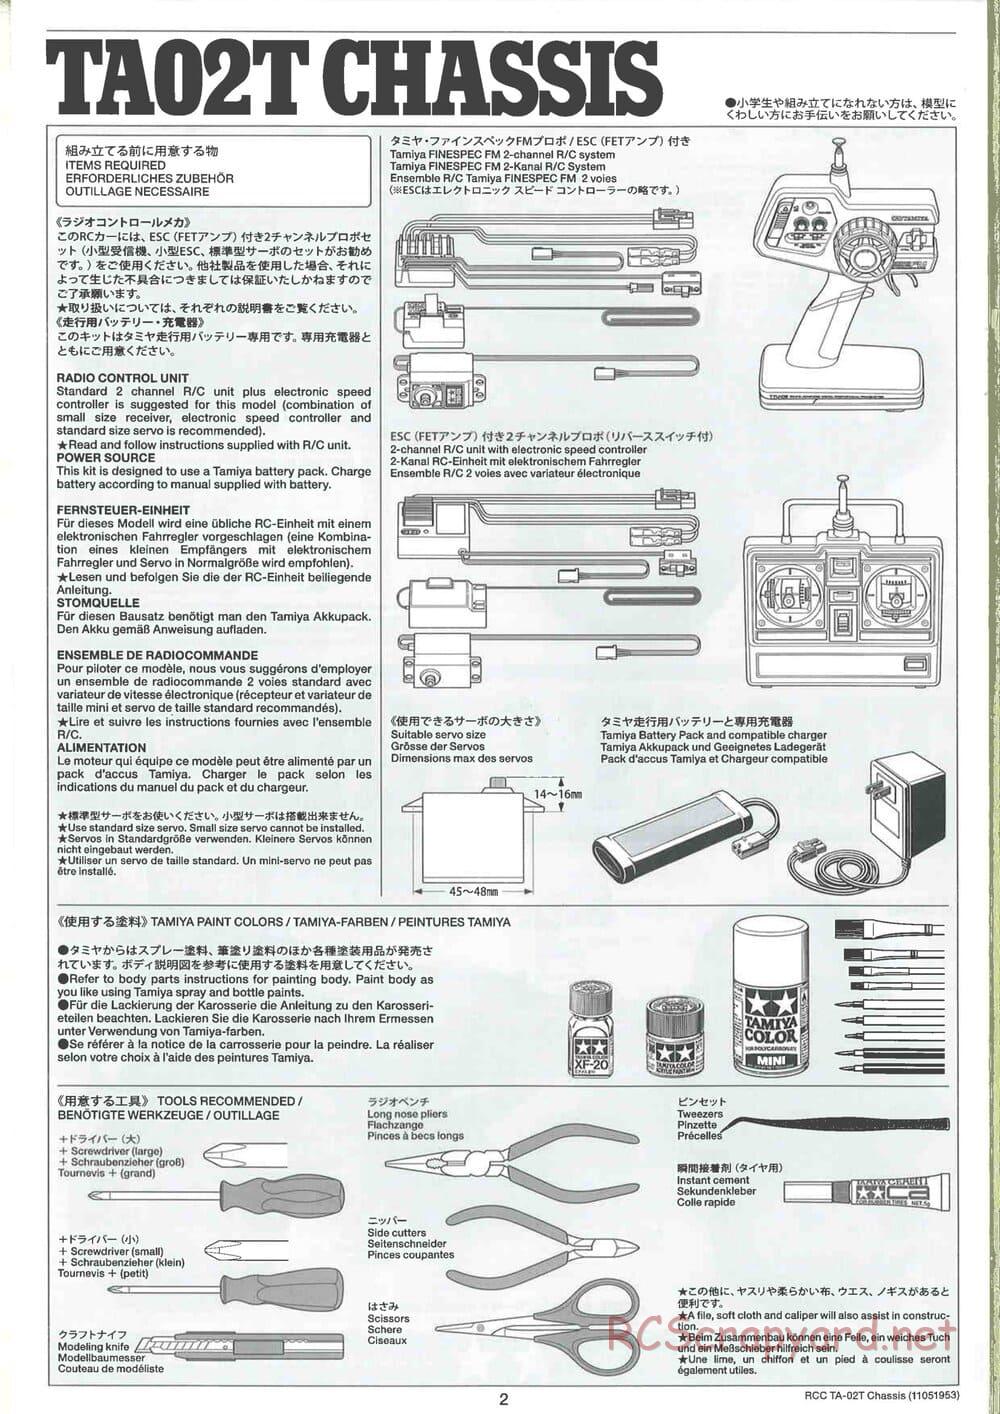 Tamiya - TA-02T Chassis - Manual - Page 2